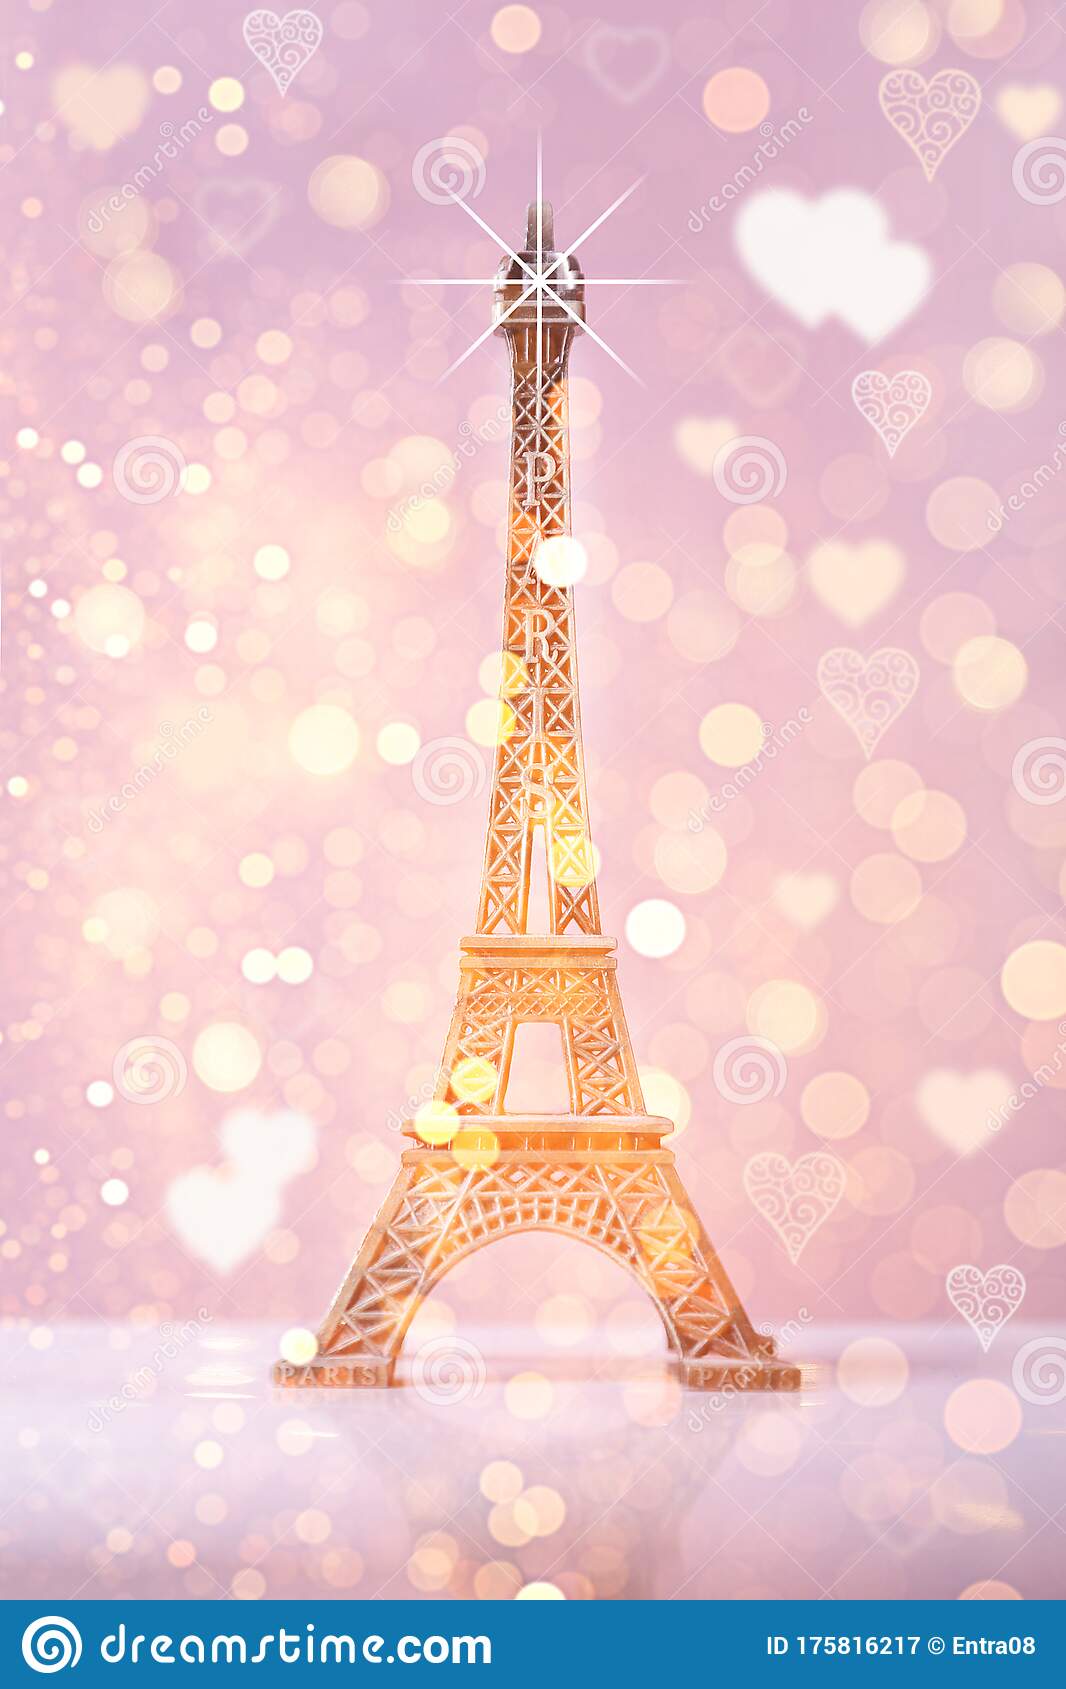 Eiffel tower souvenir with pink bokeh shine background and lightseiffel tower souvenir with pink bokeh shine background and ligh stock image